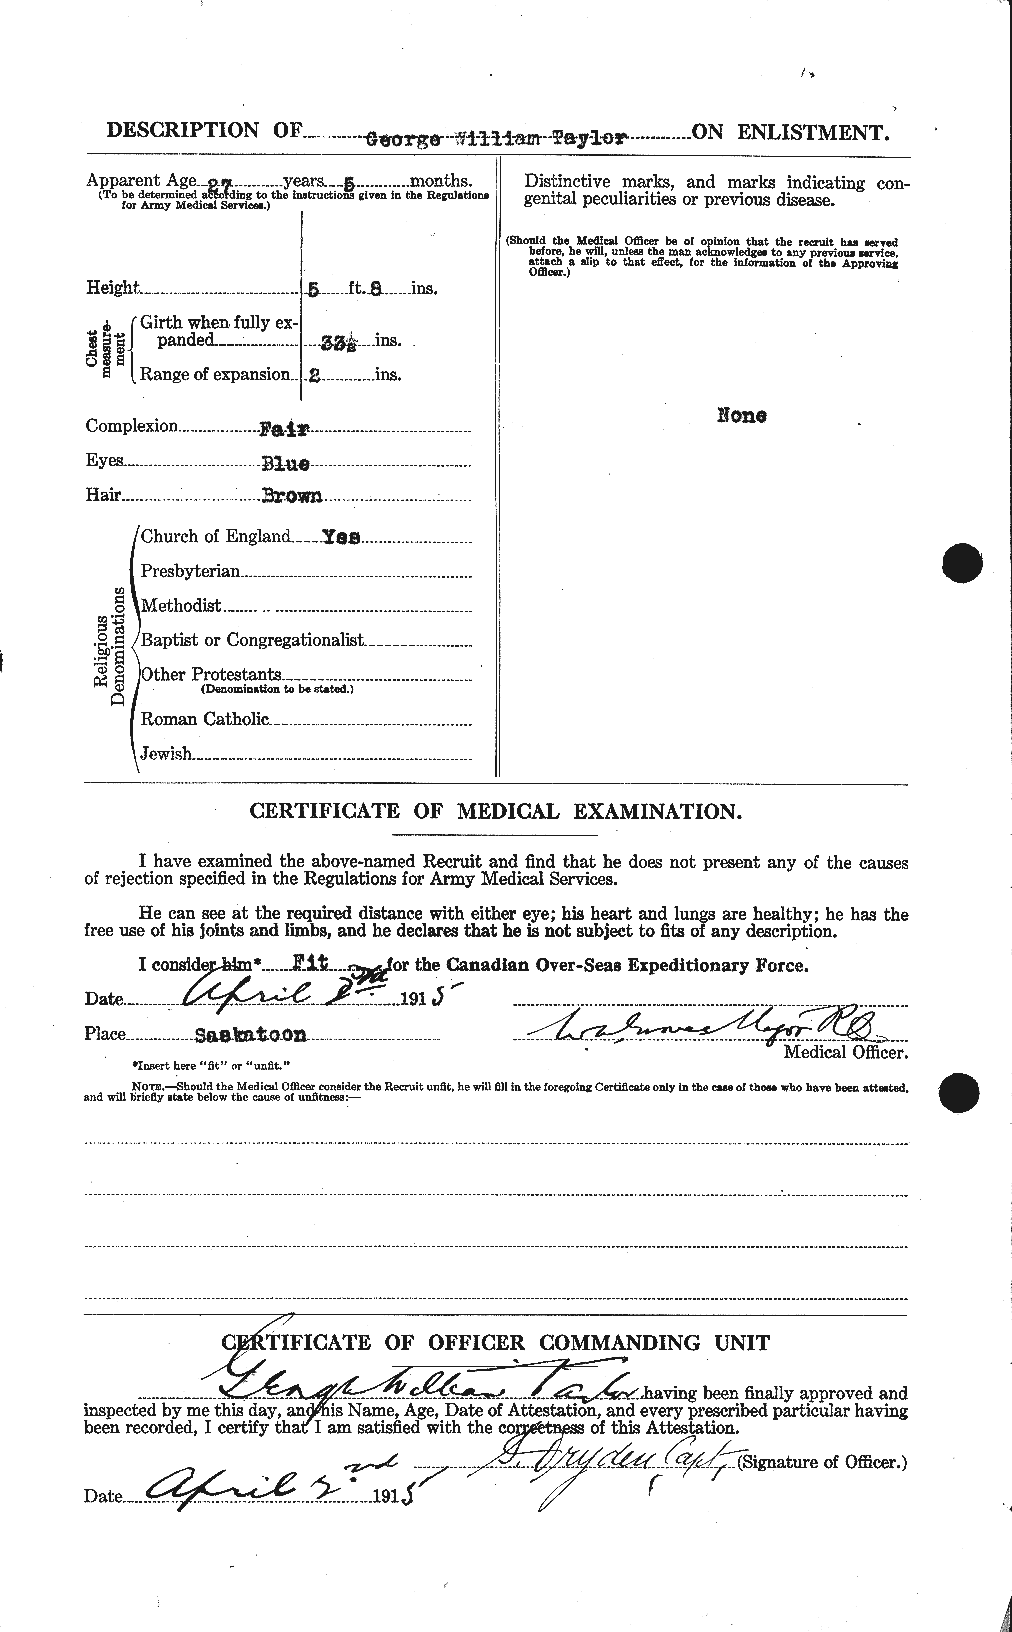 Dossiers du Personnel de la Première Guerre mondiale - CEC 626367b